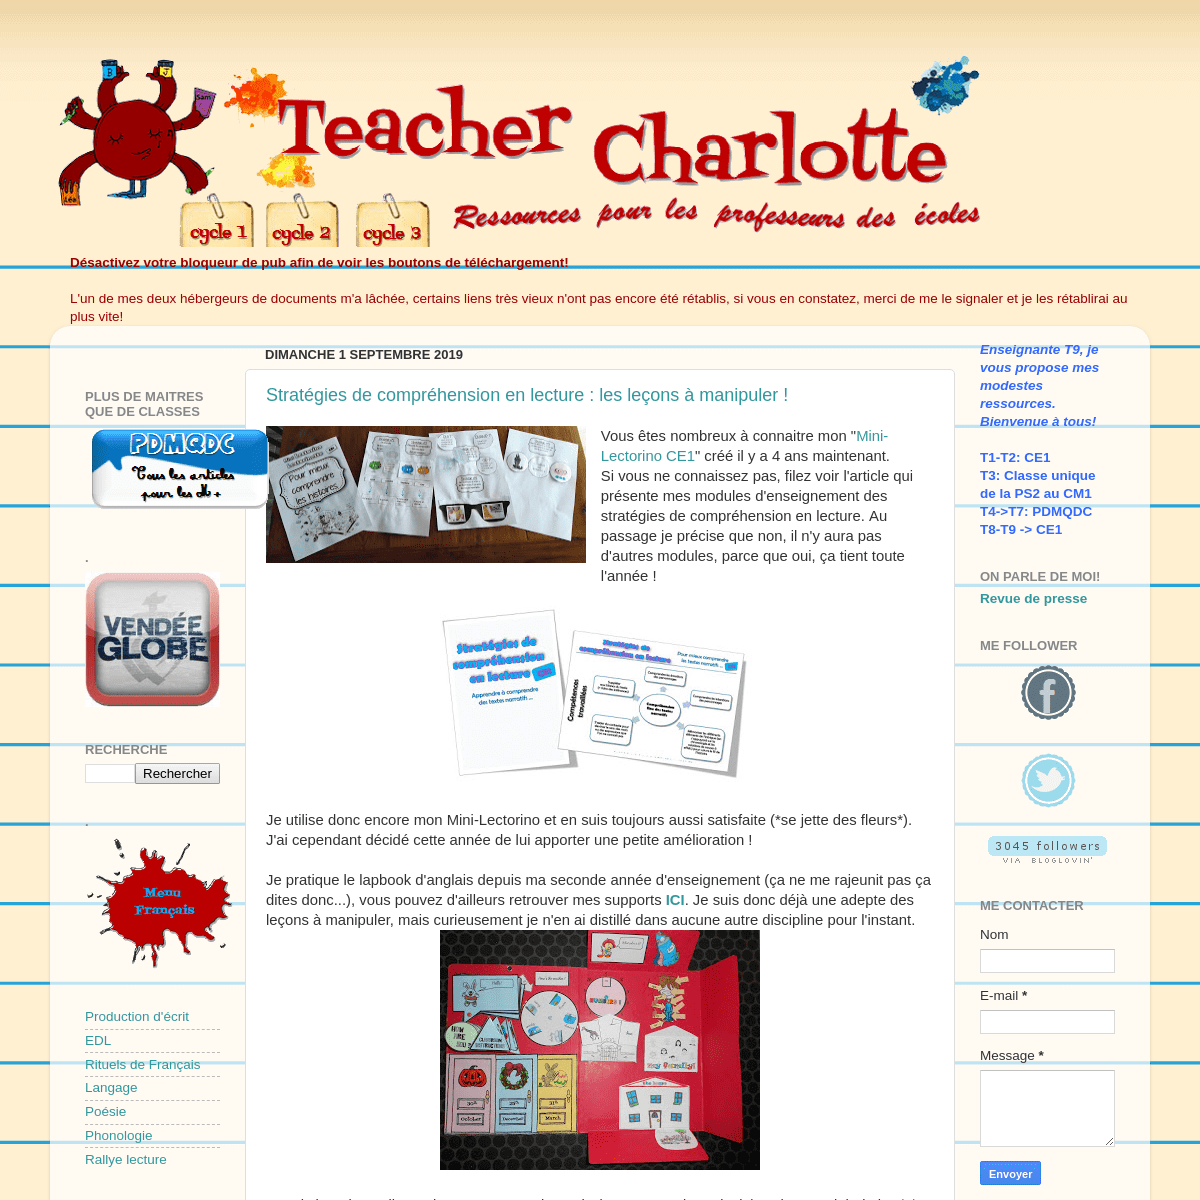 Teacher Charlotte